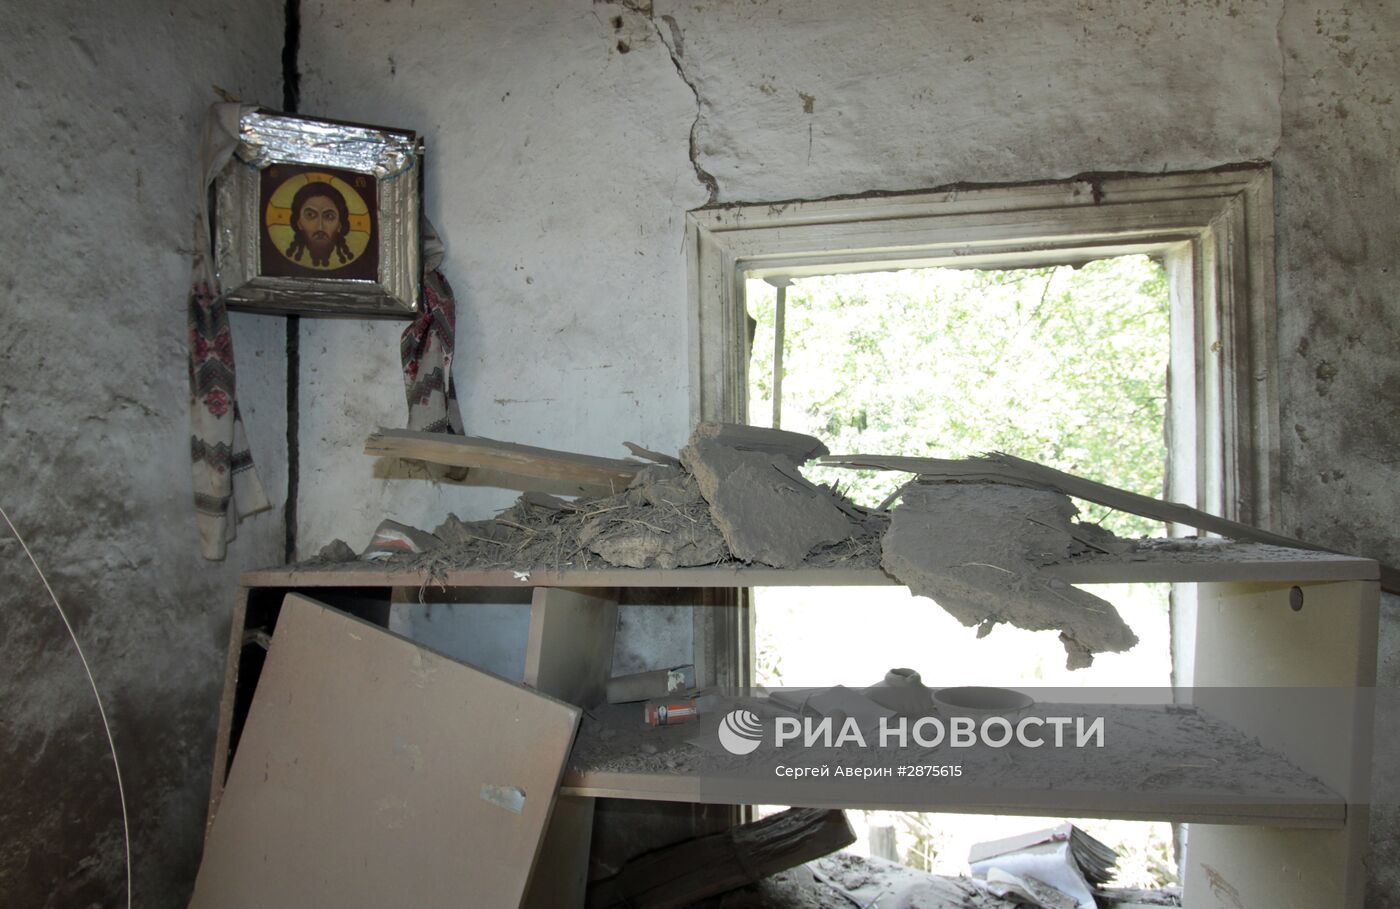 Последствия обстрела Донецка